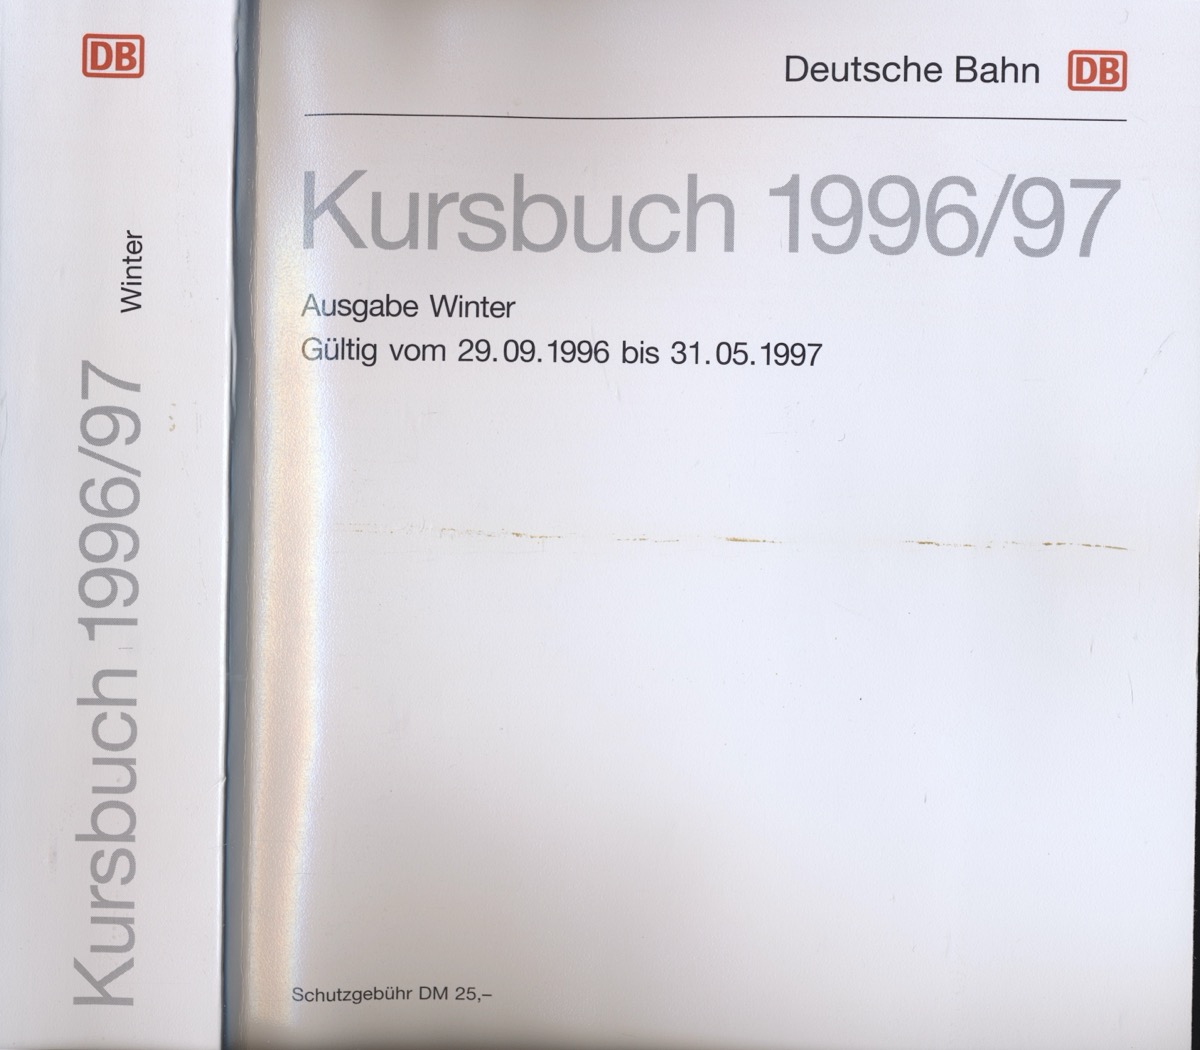 Deutsche Bahn AG  Deutsche Bahn: Kursbuch 1996/97, Ausgabe Winter, gültig vom 29.09.1996 bis 31.05.1997. 